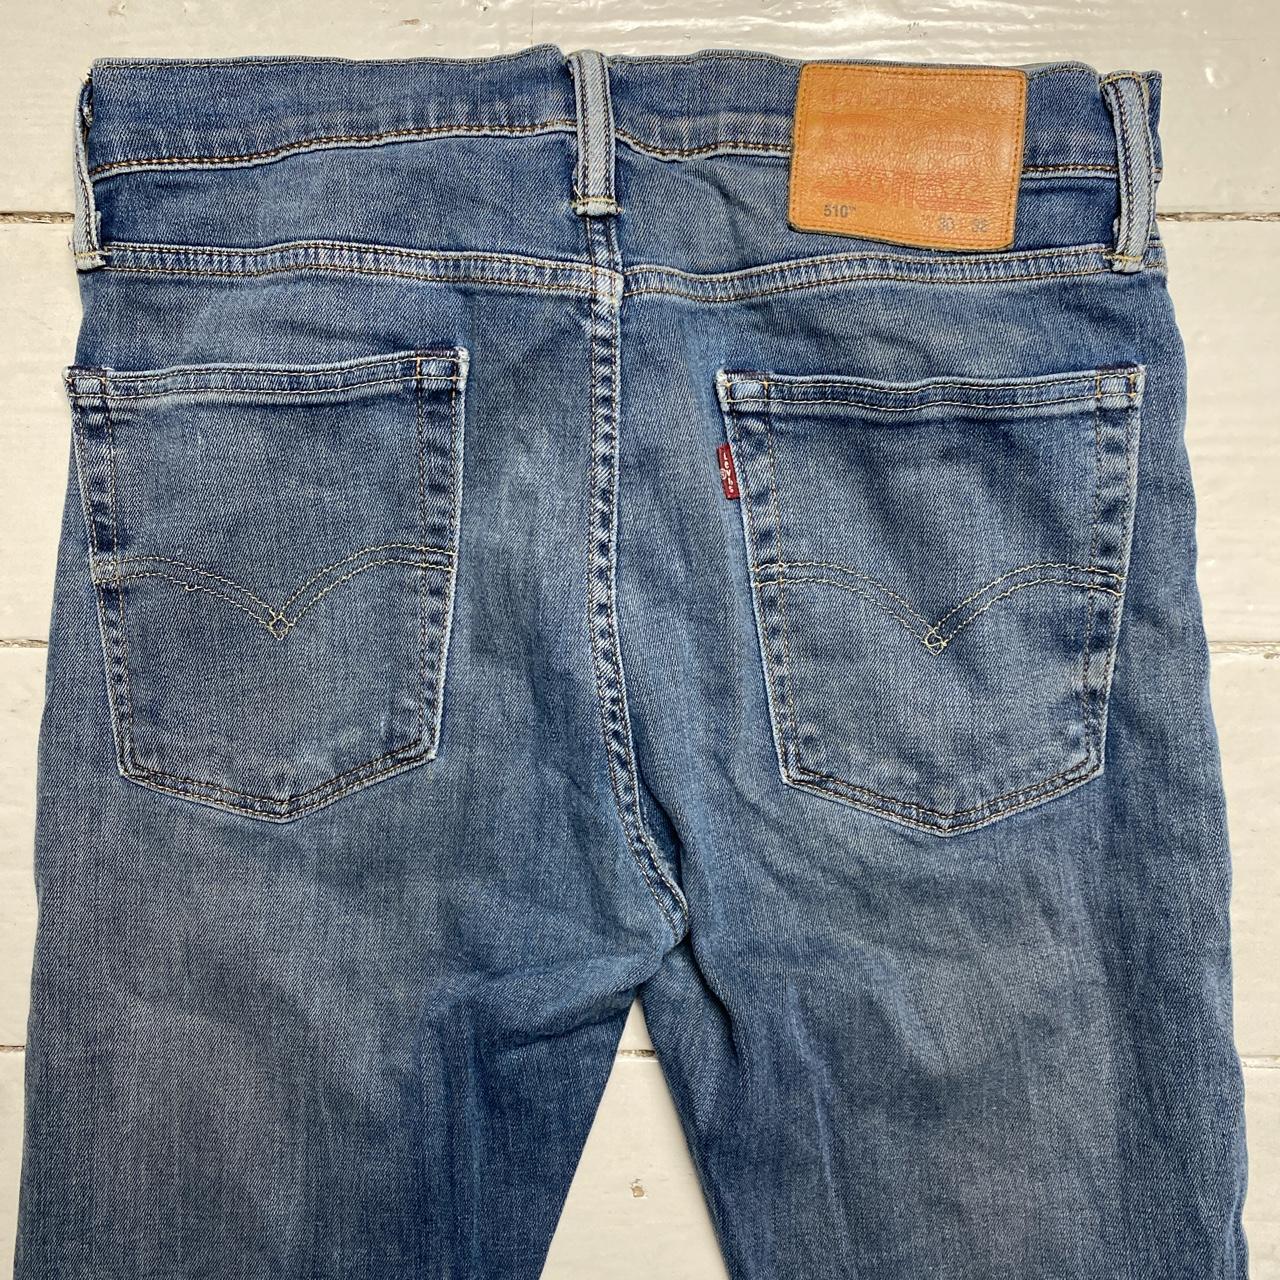 Levis 510 Slim Blue Jeans